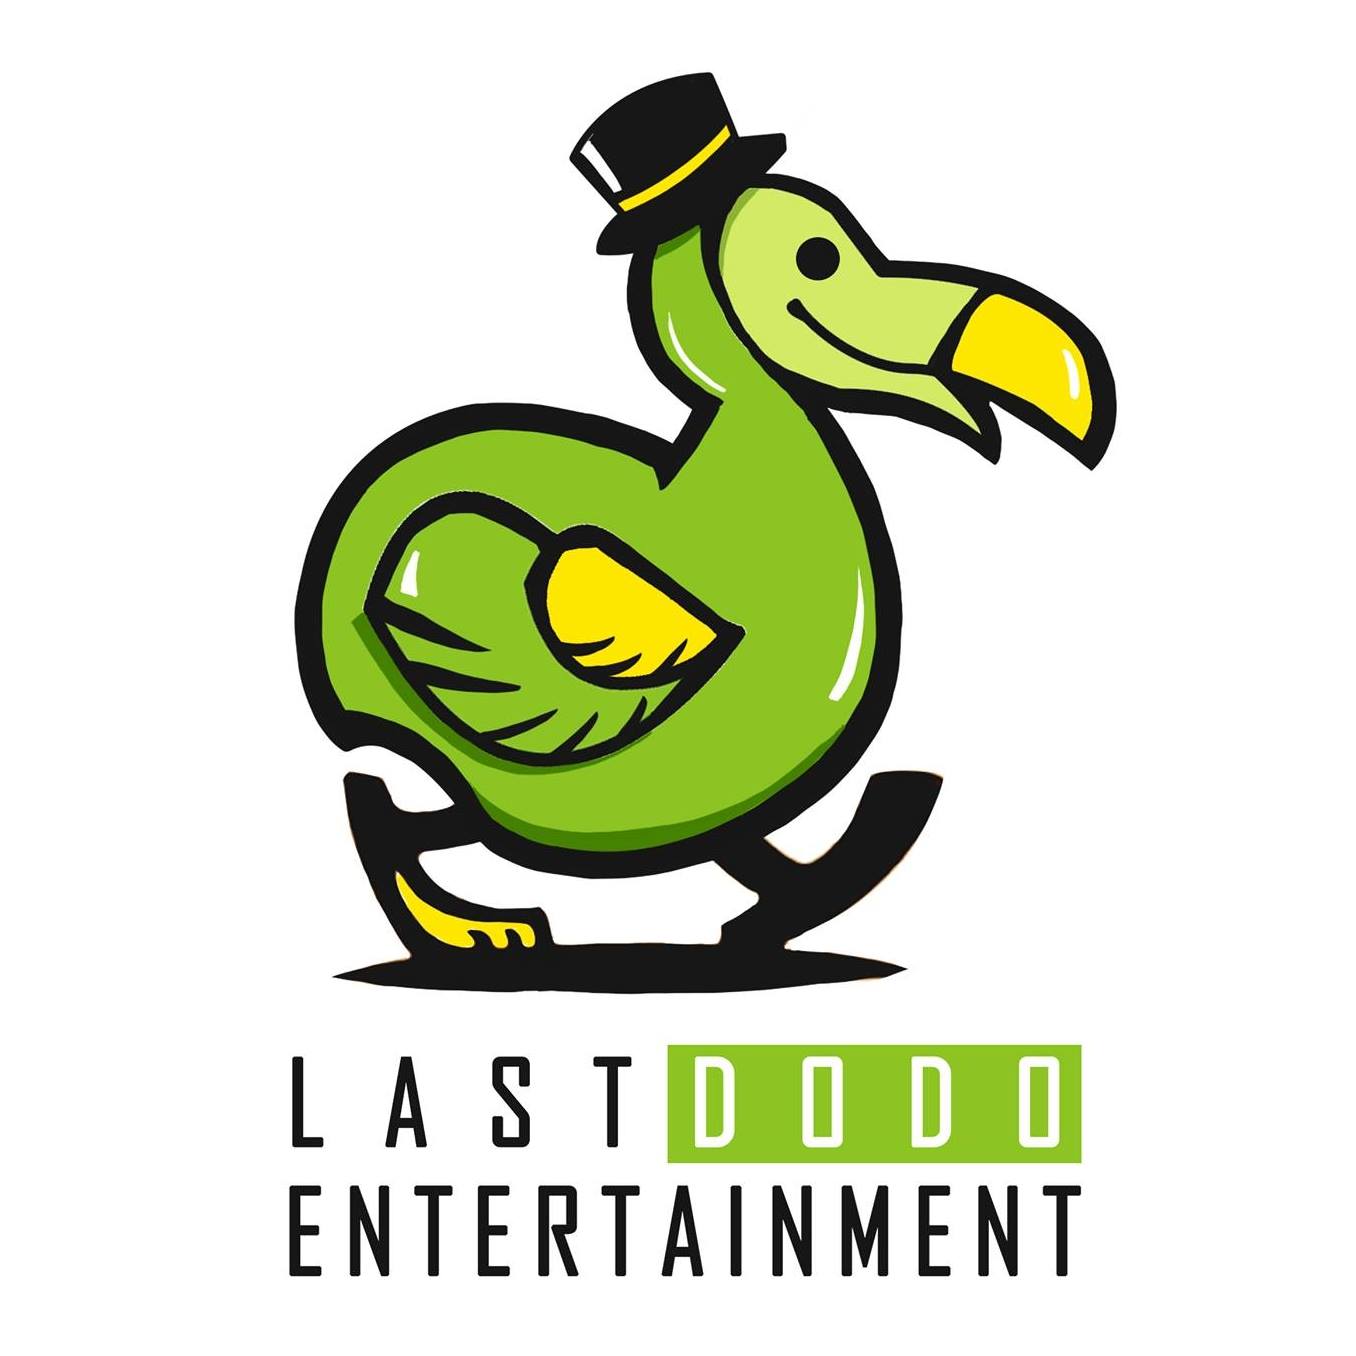 Last Dodo Entertainment - Facebook Logo